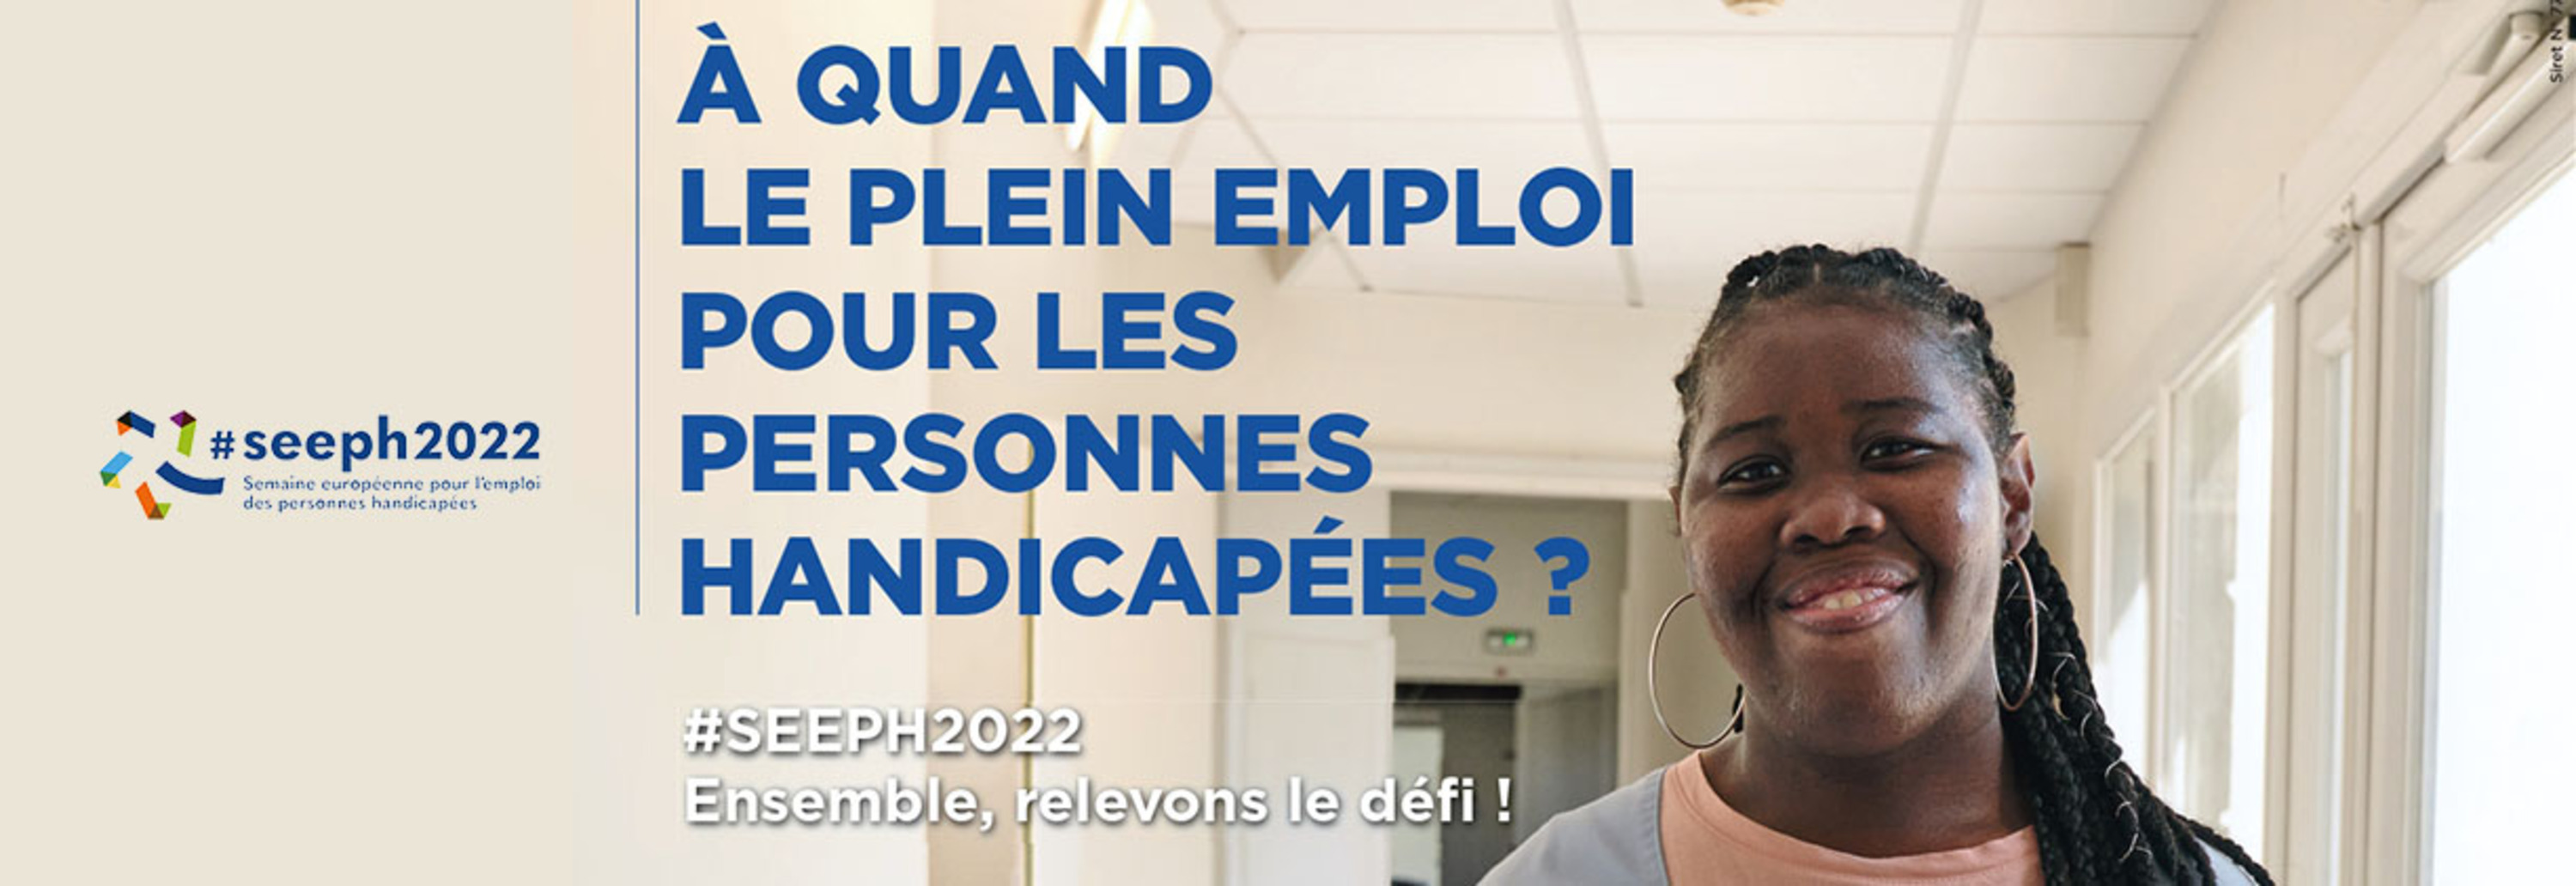 "A quand le plein emploi pour les personnes handicapées ?" Bannière d'illustration de la campagne 2022 pour la Semaine Européenne pour l'Emploi des Personnes Handicapées.